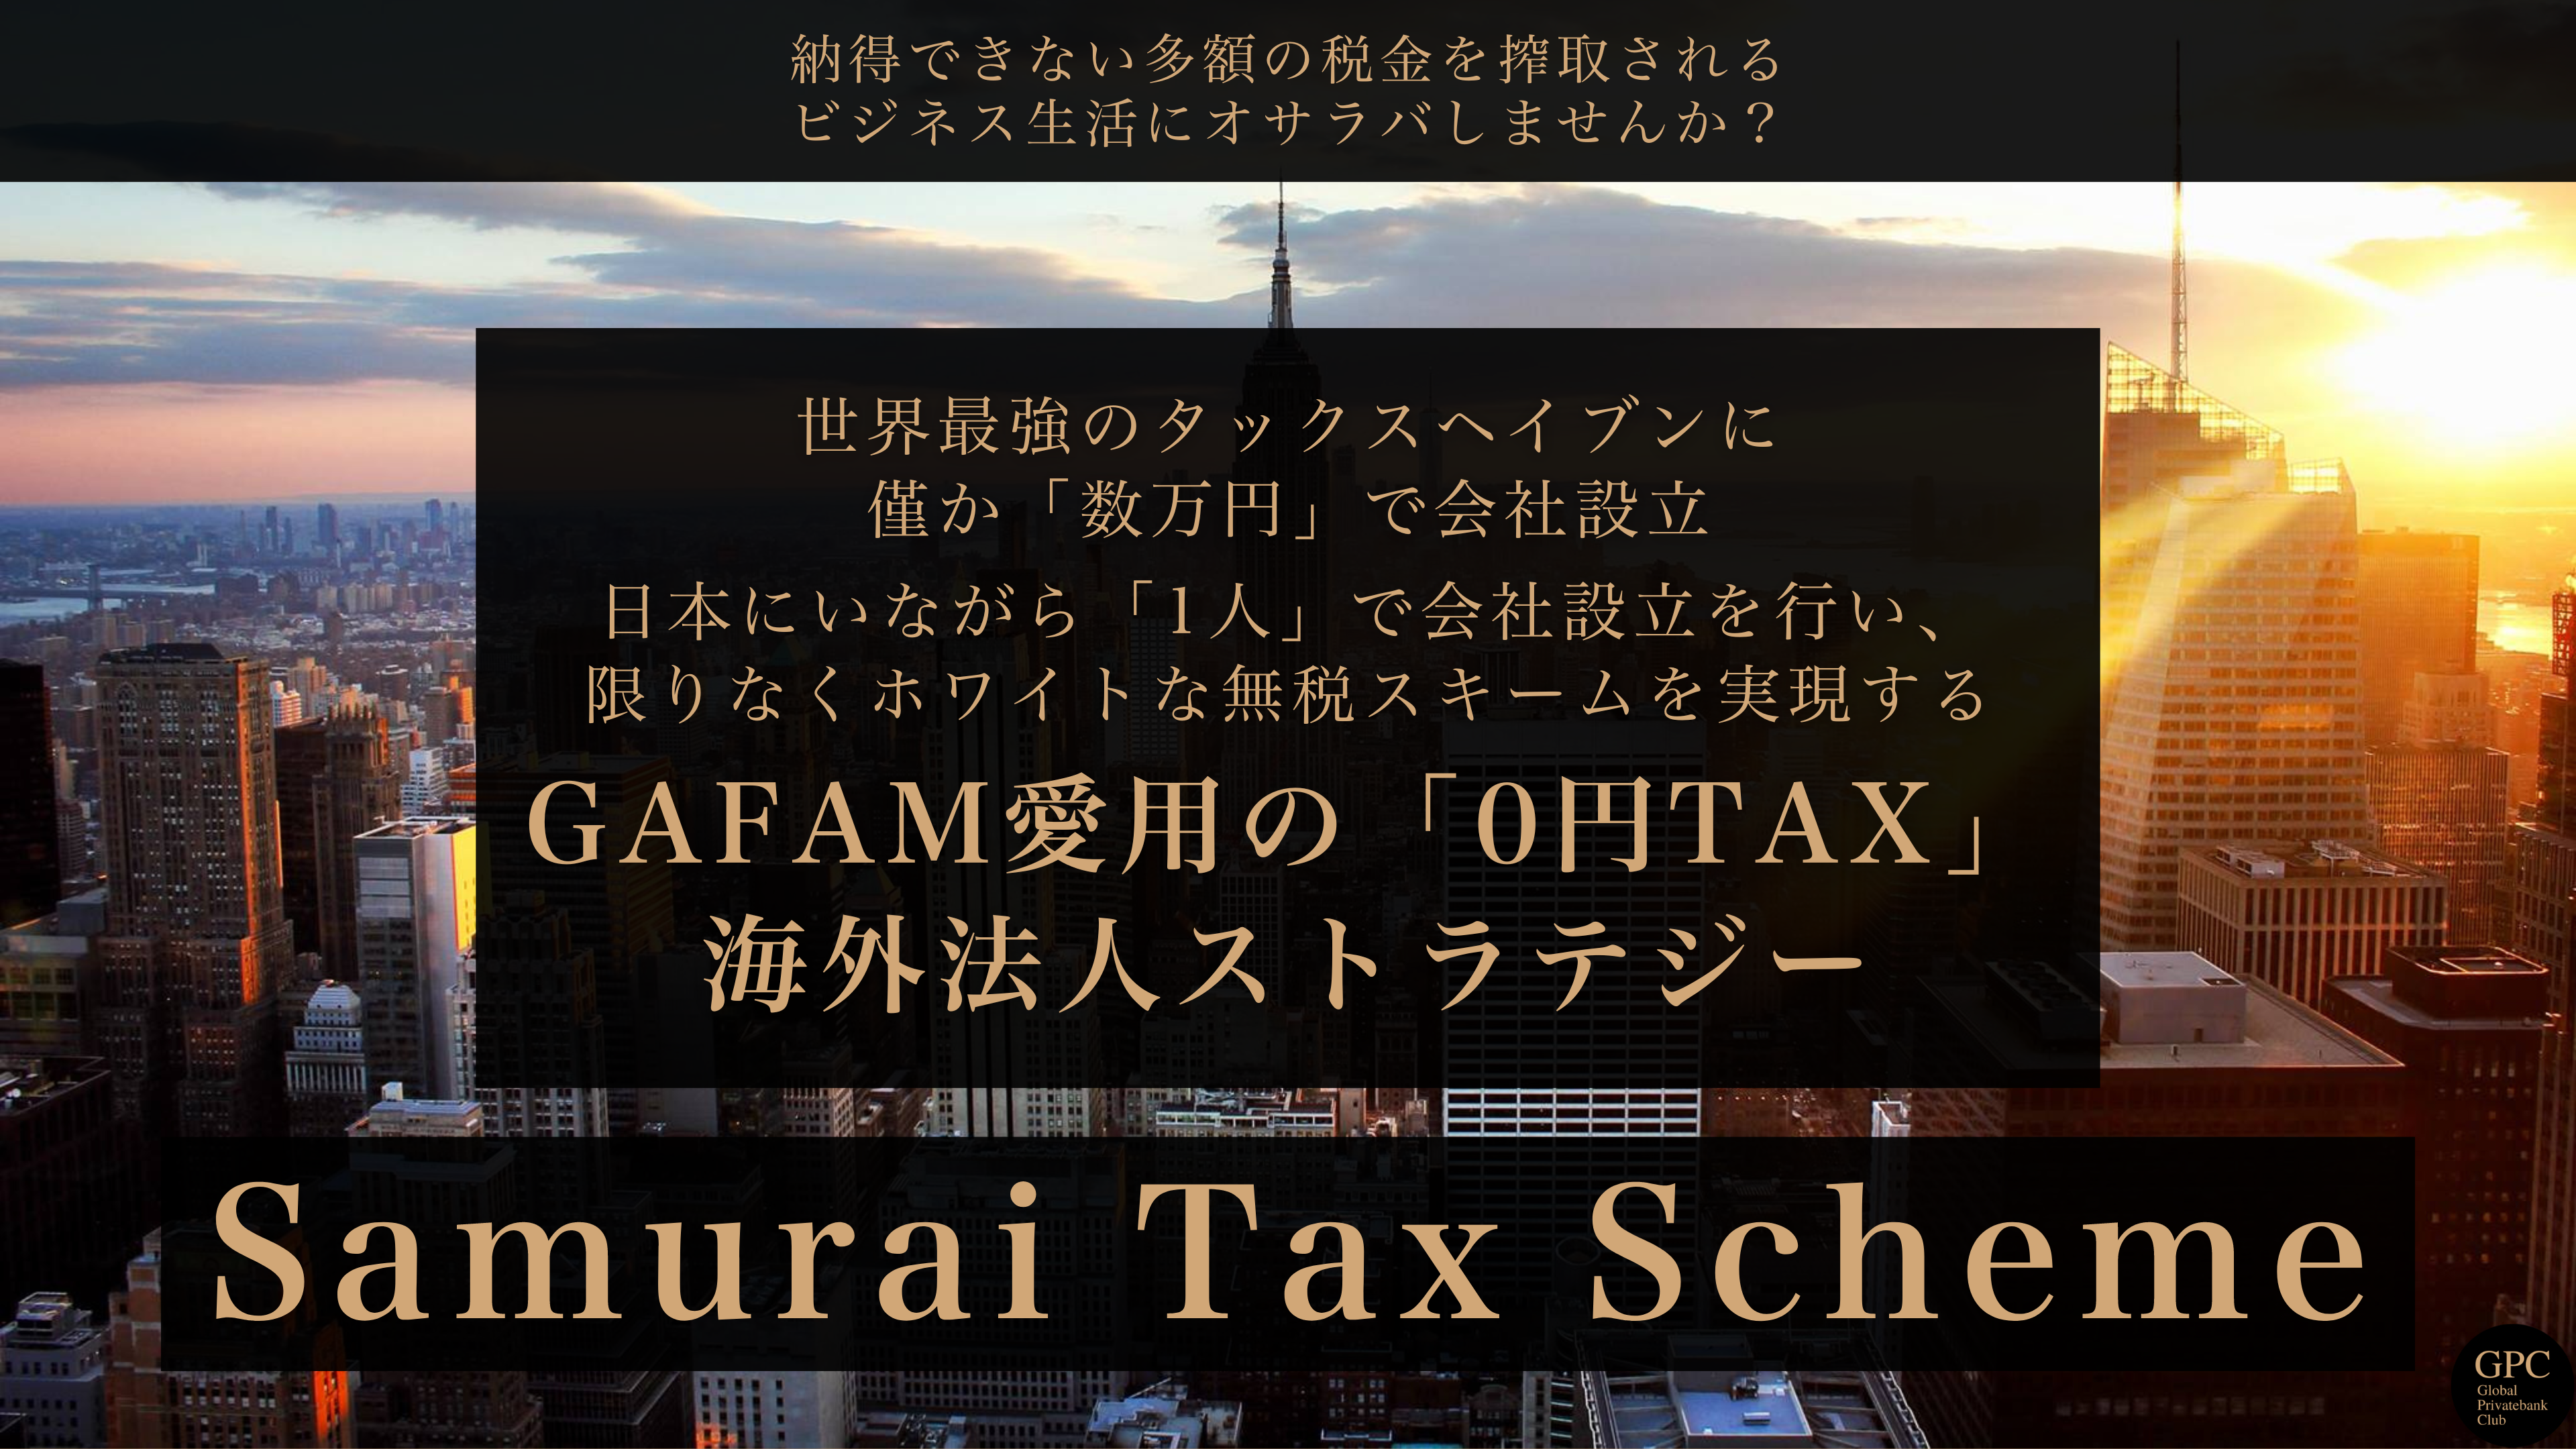 Samurai Tax Scheme-スマホトップ